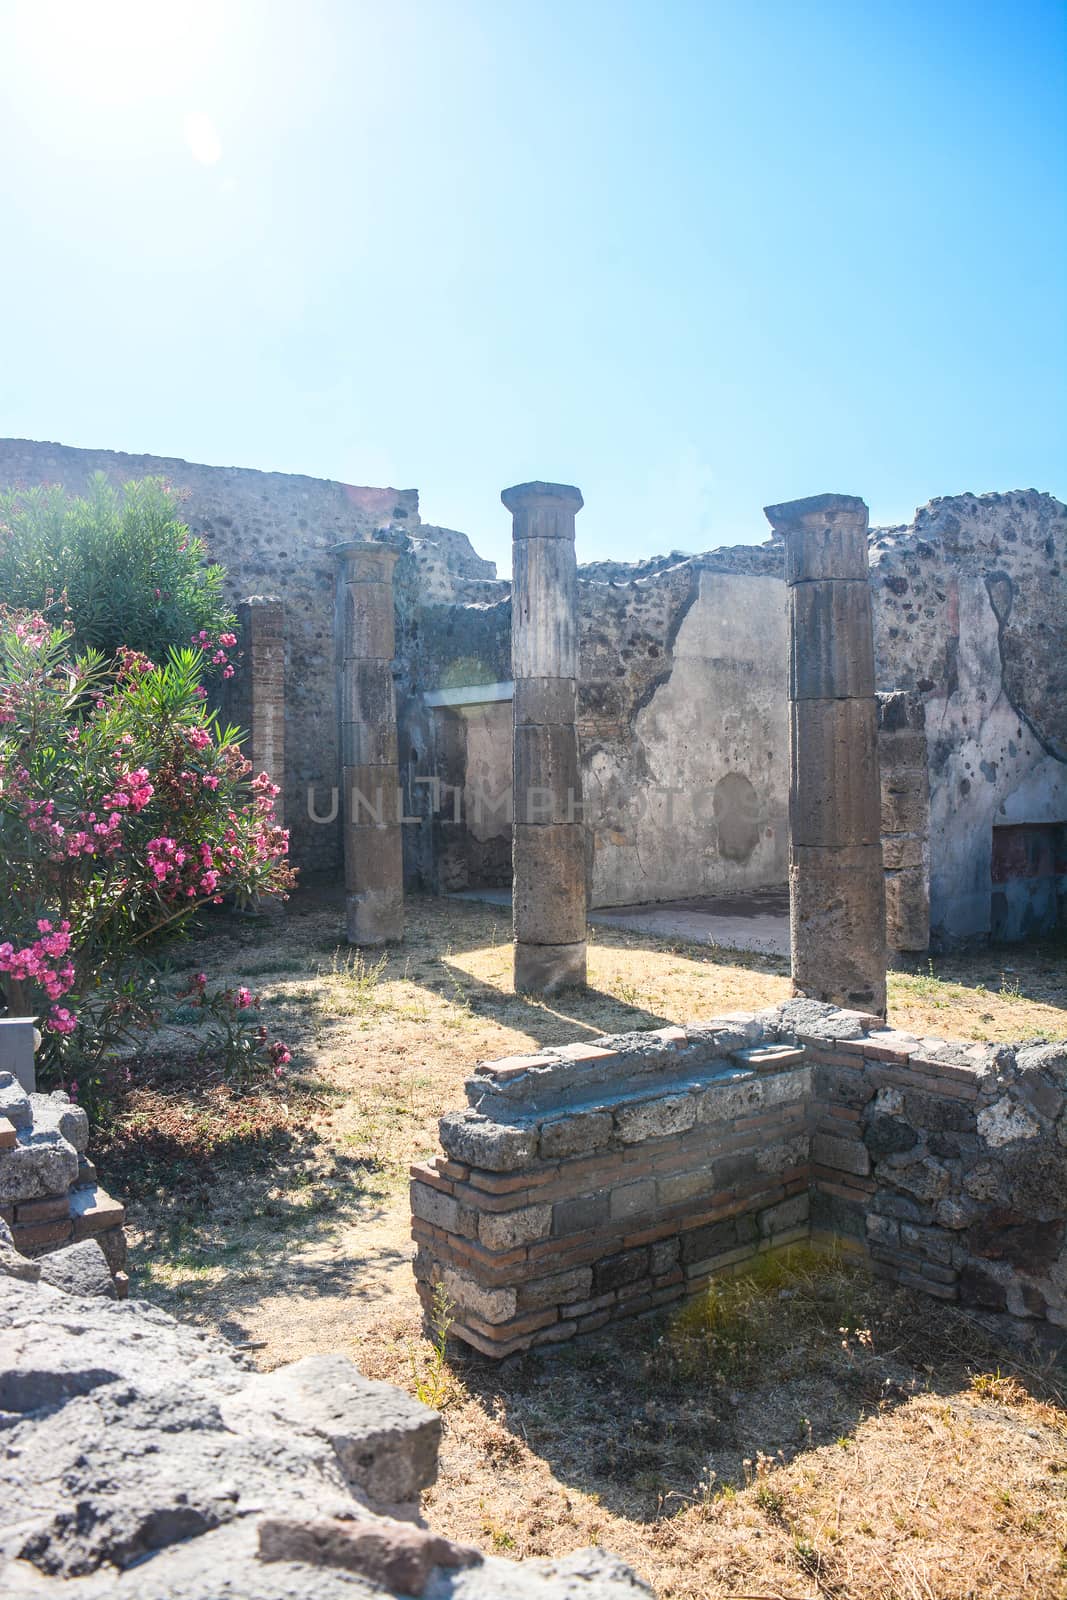 Pompeii original shots by iacobino